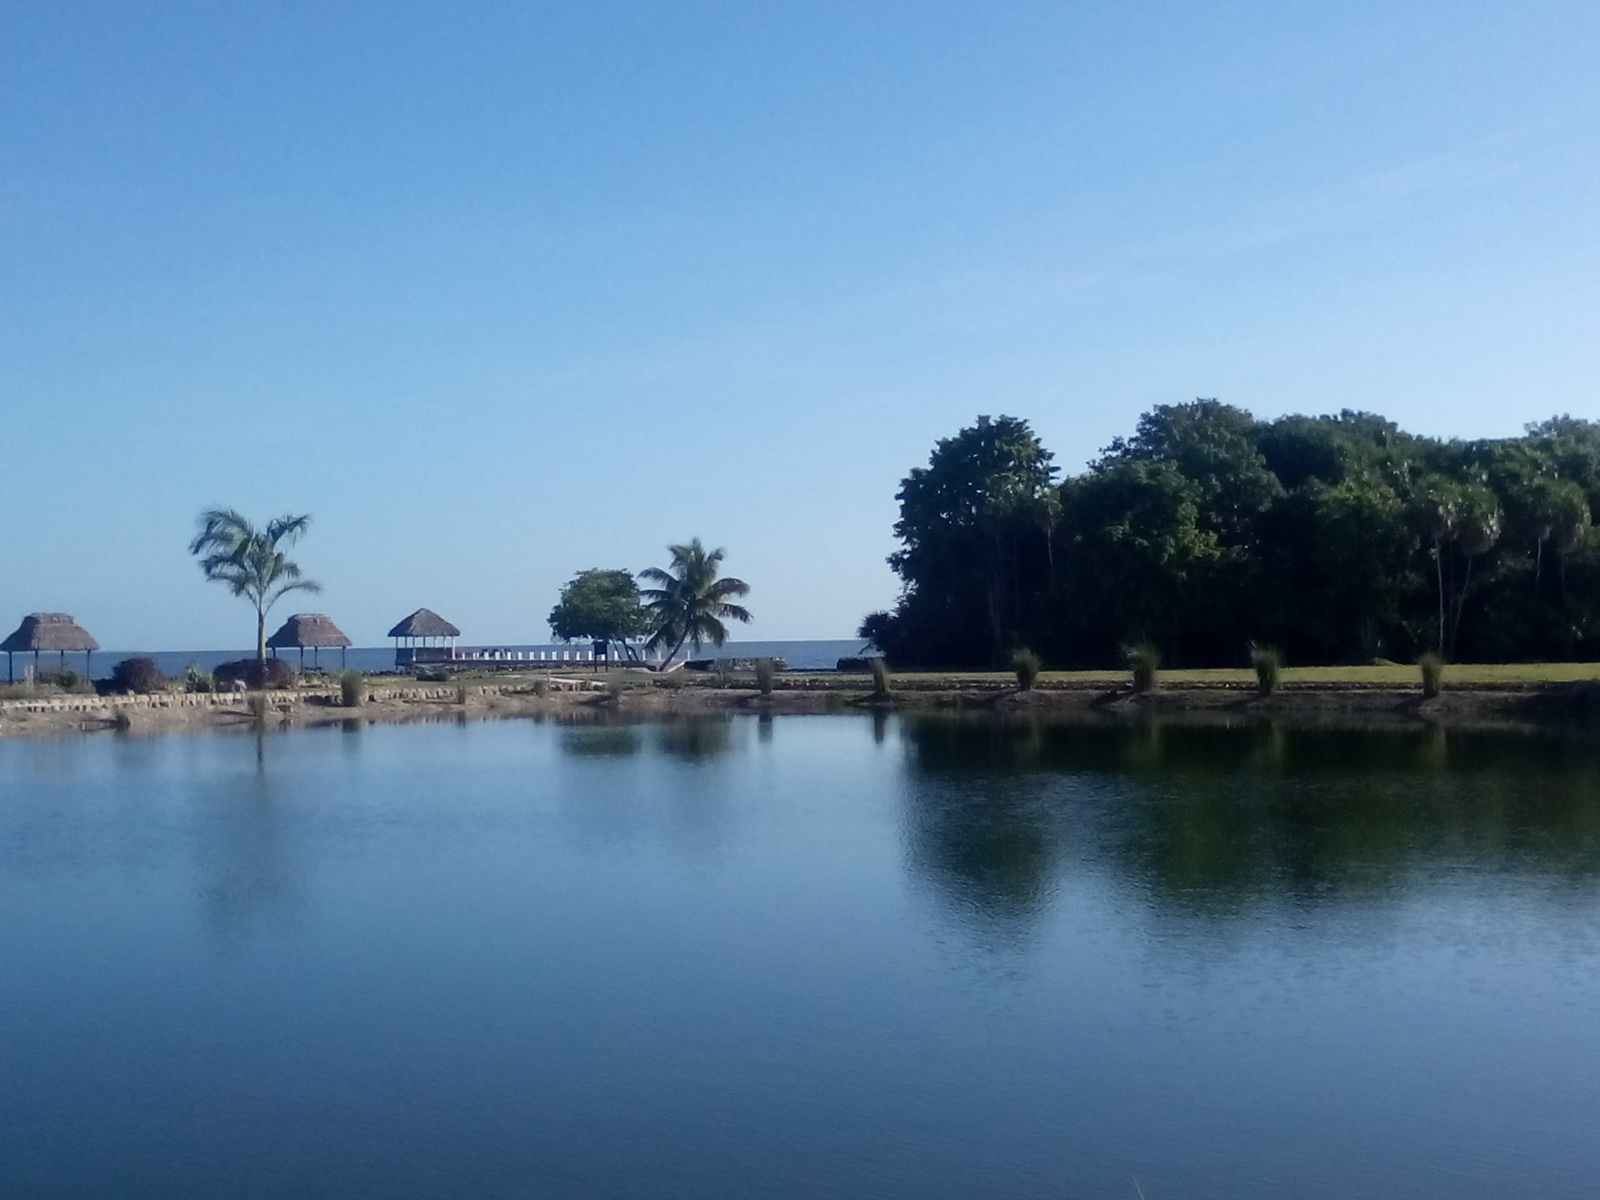 Mayan Seaside Waterfront Park